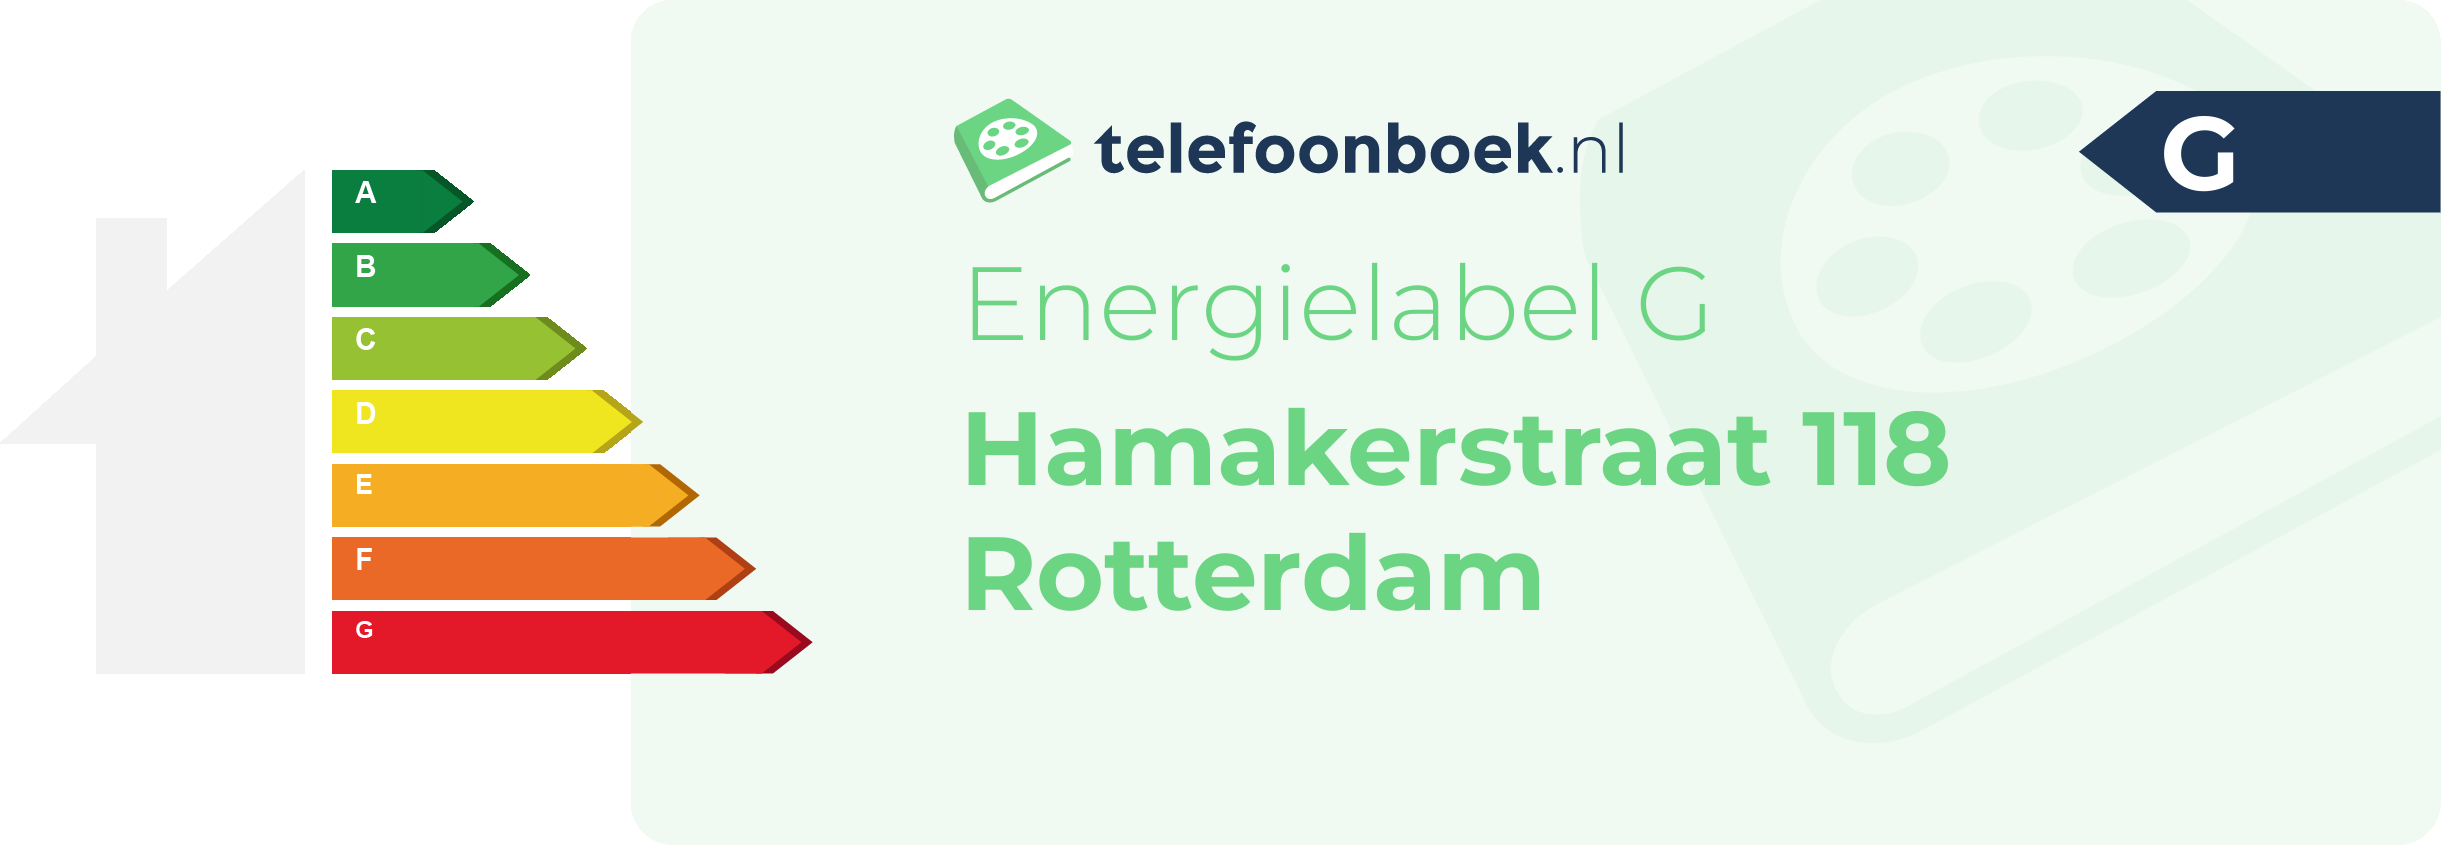 Energielabel Hamakerstraat 118 Rotterdam